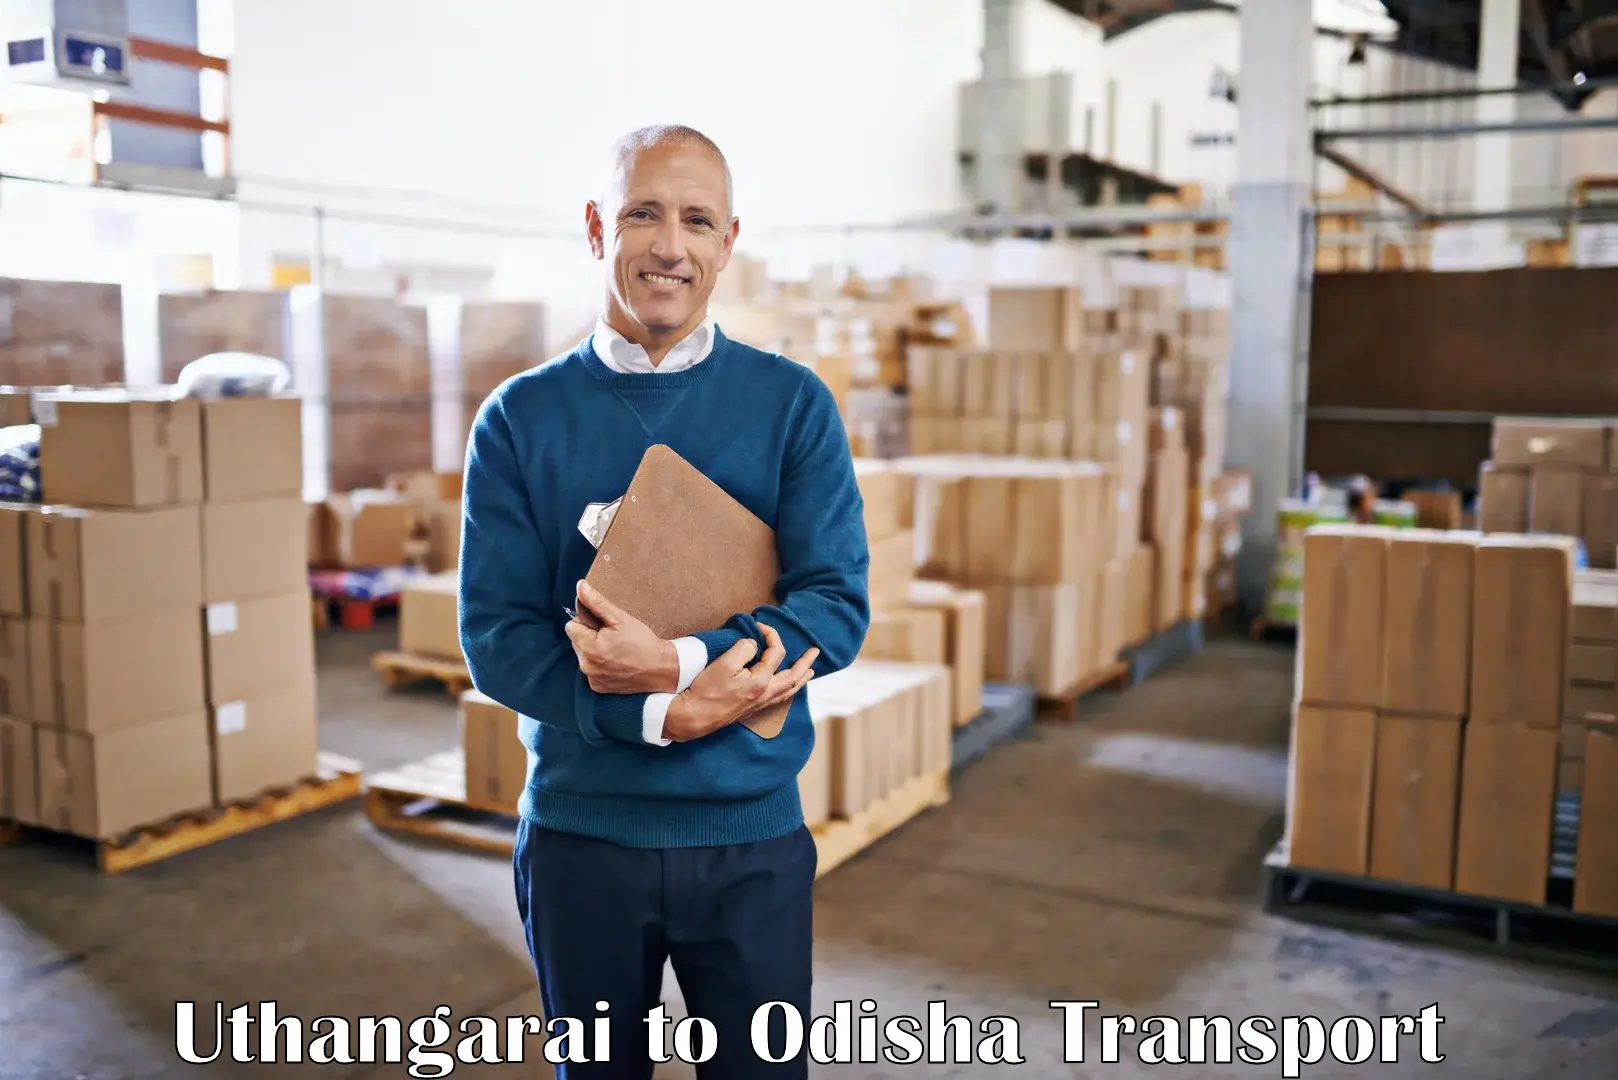 Furniture transport service Uthangarai to Kendrapara